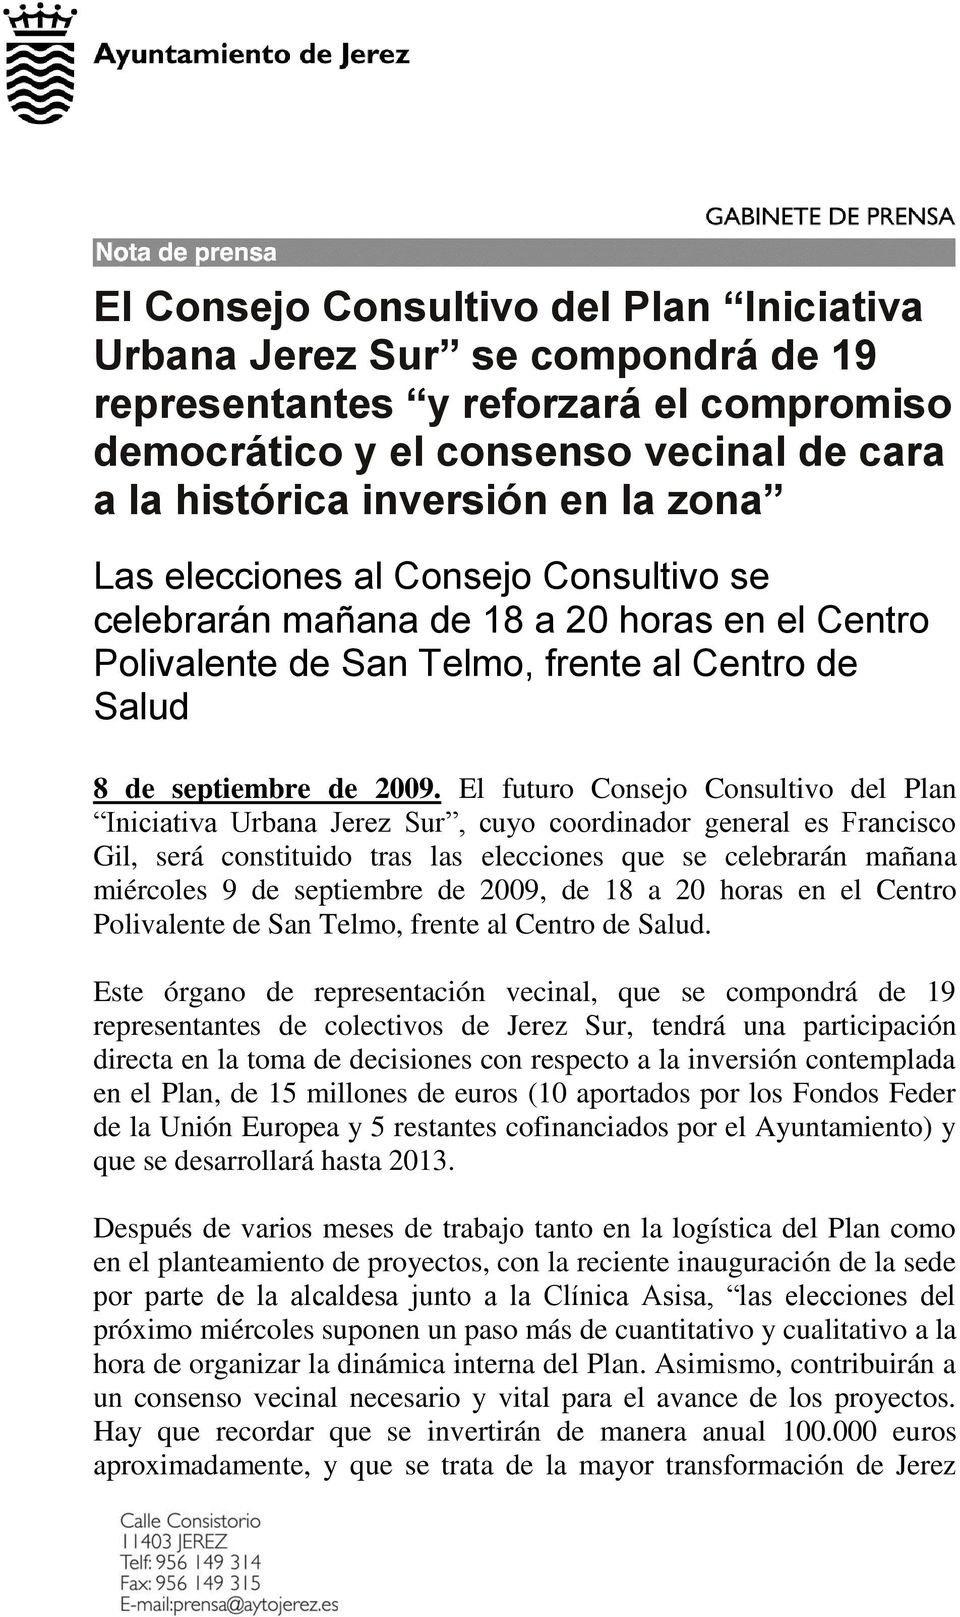 El futuro Consejo Consultivo del Plan Iniciativa Urbana Jerez Sur, cuyo coordinador general es Francisco Gil, será constituido tras las elecciones que se celebrarán mañana miércoles 9 de septiembre